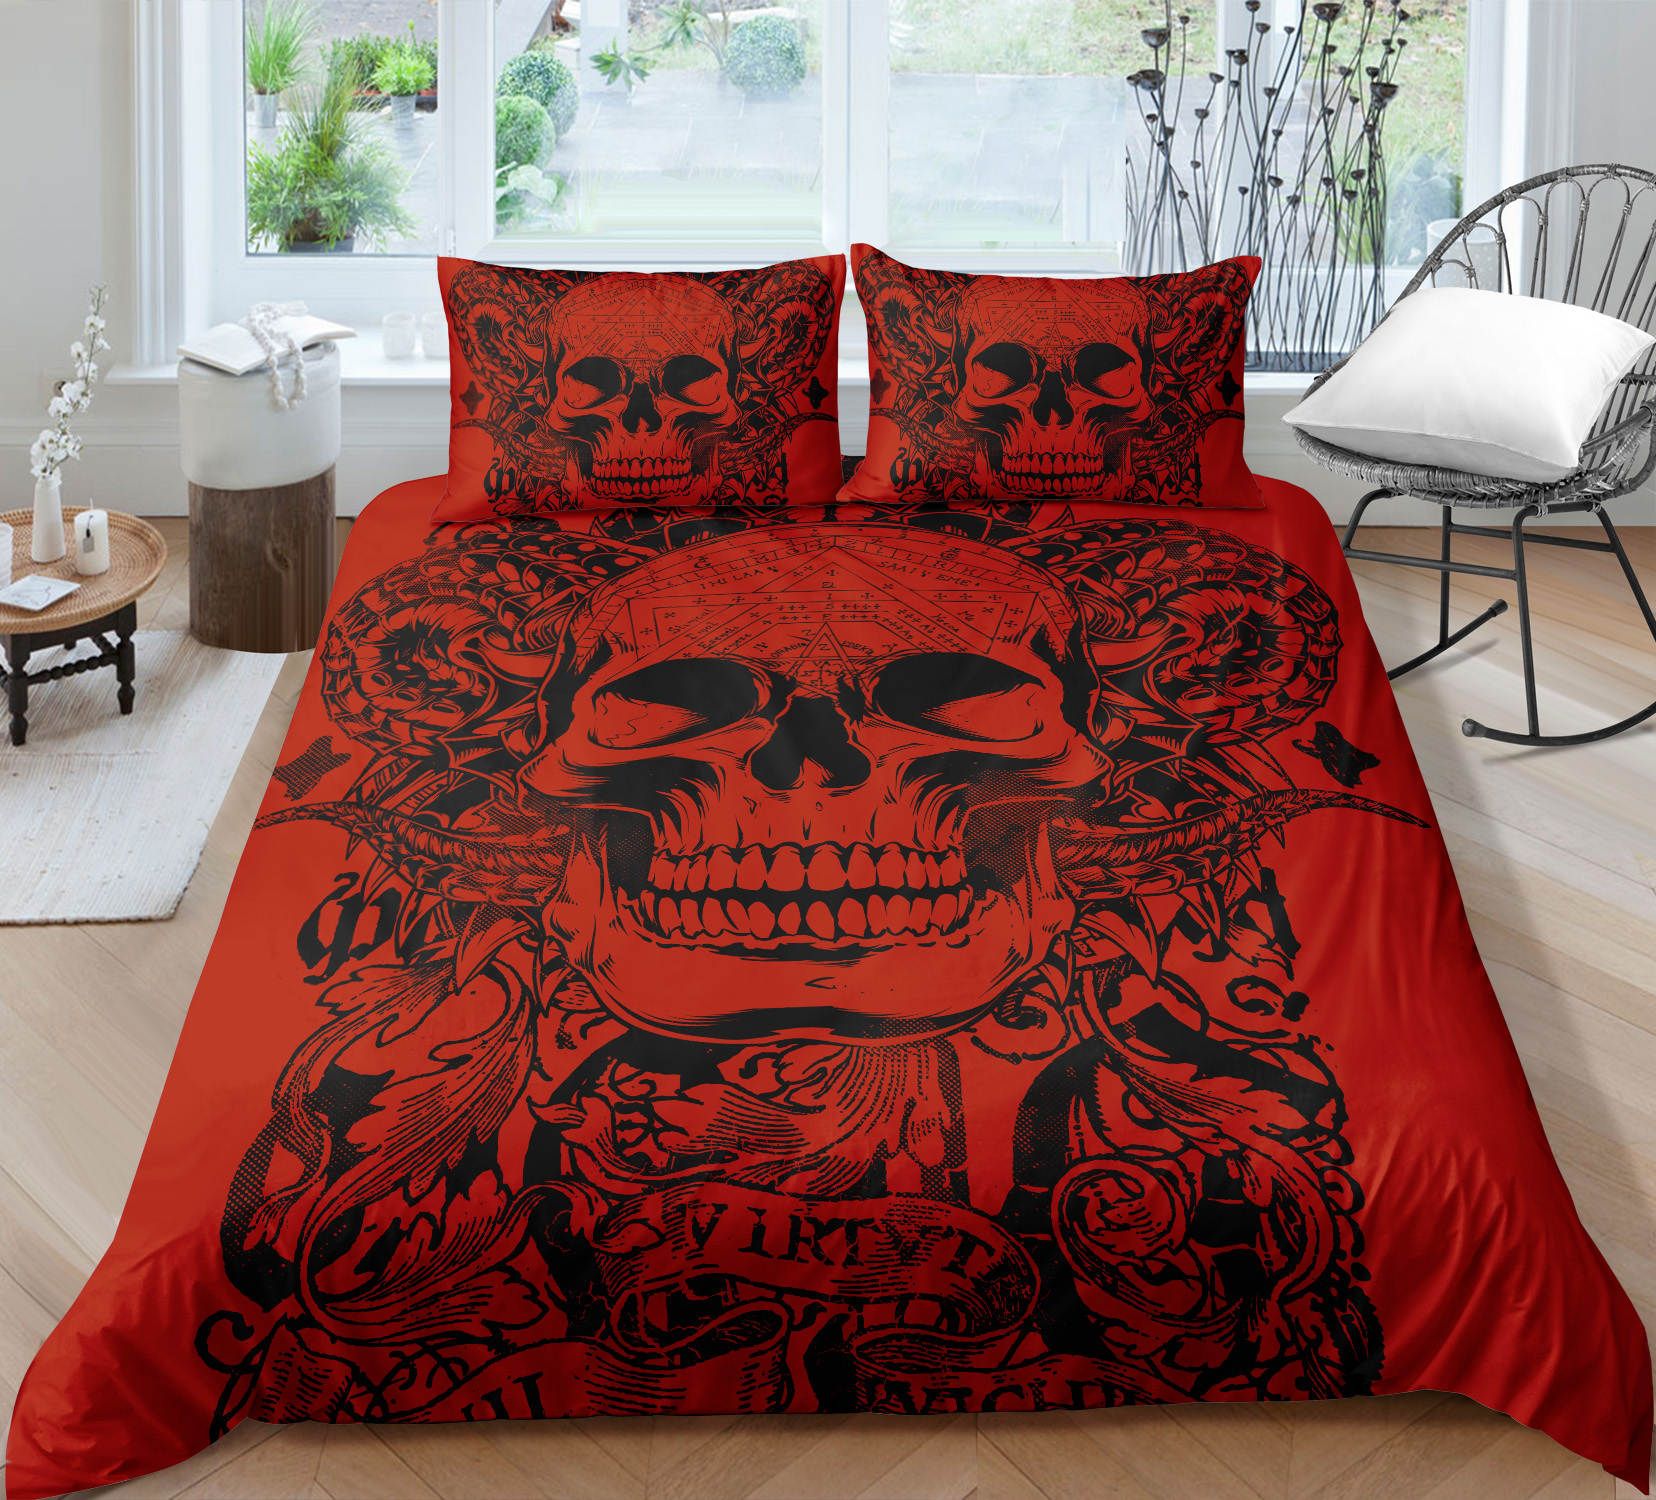 Red Skull Bedding Set King Size Popular, Skull King Size Duvet Cover